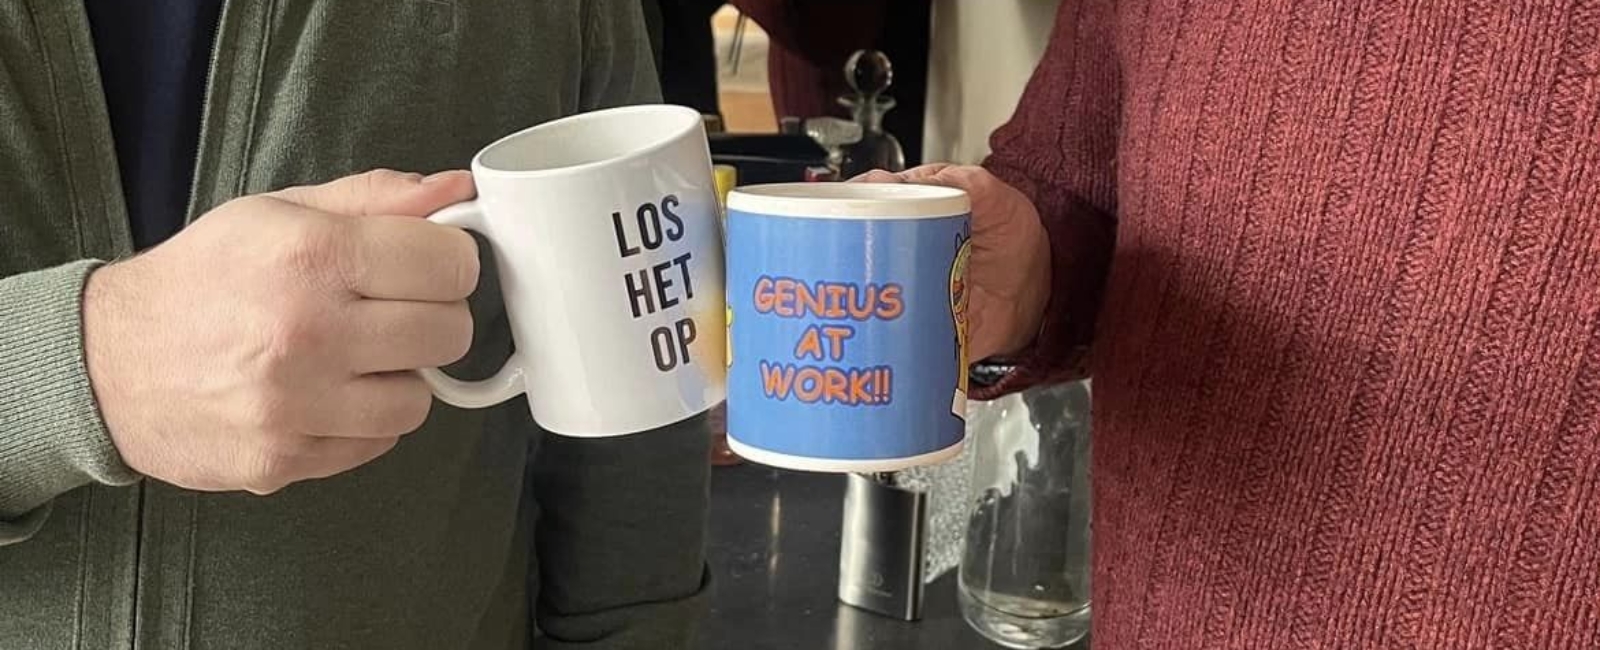 Genius at work vs. Los het op